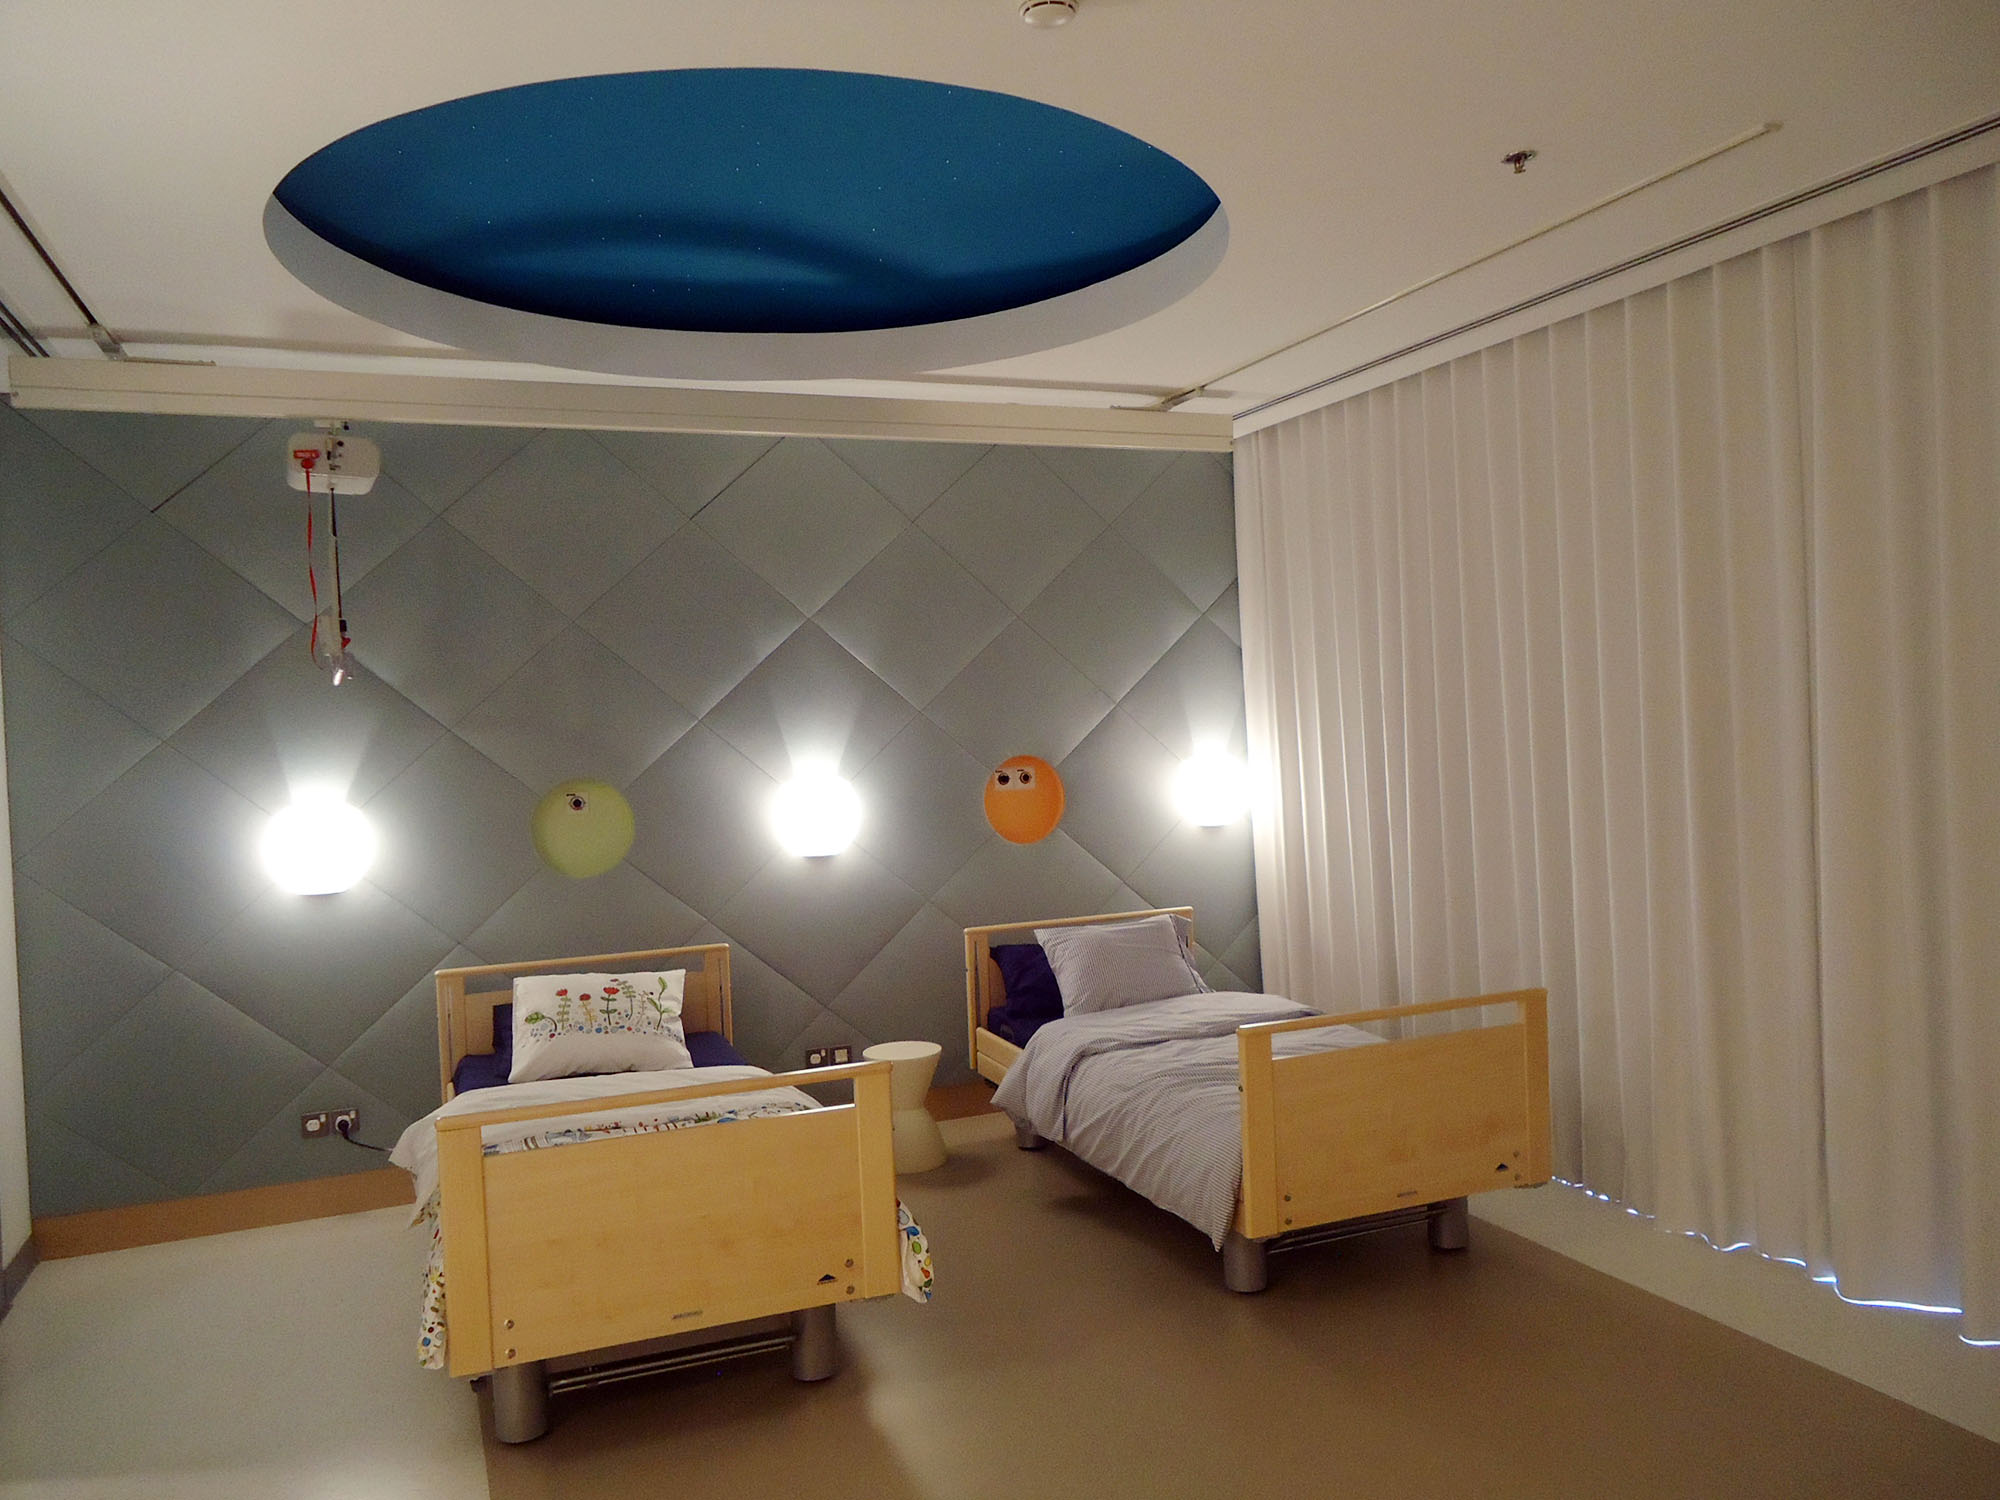 Bayt Abdullah Hospice for Children